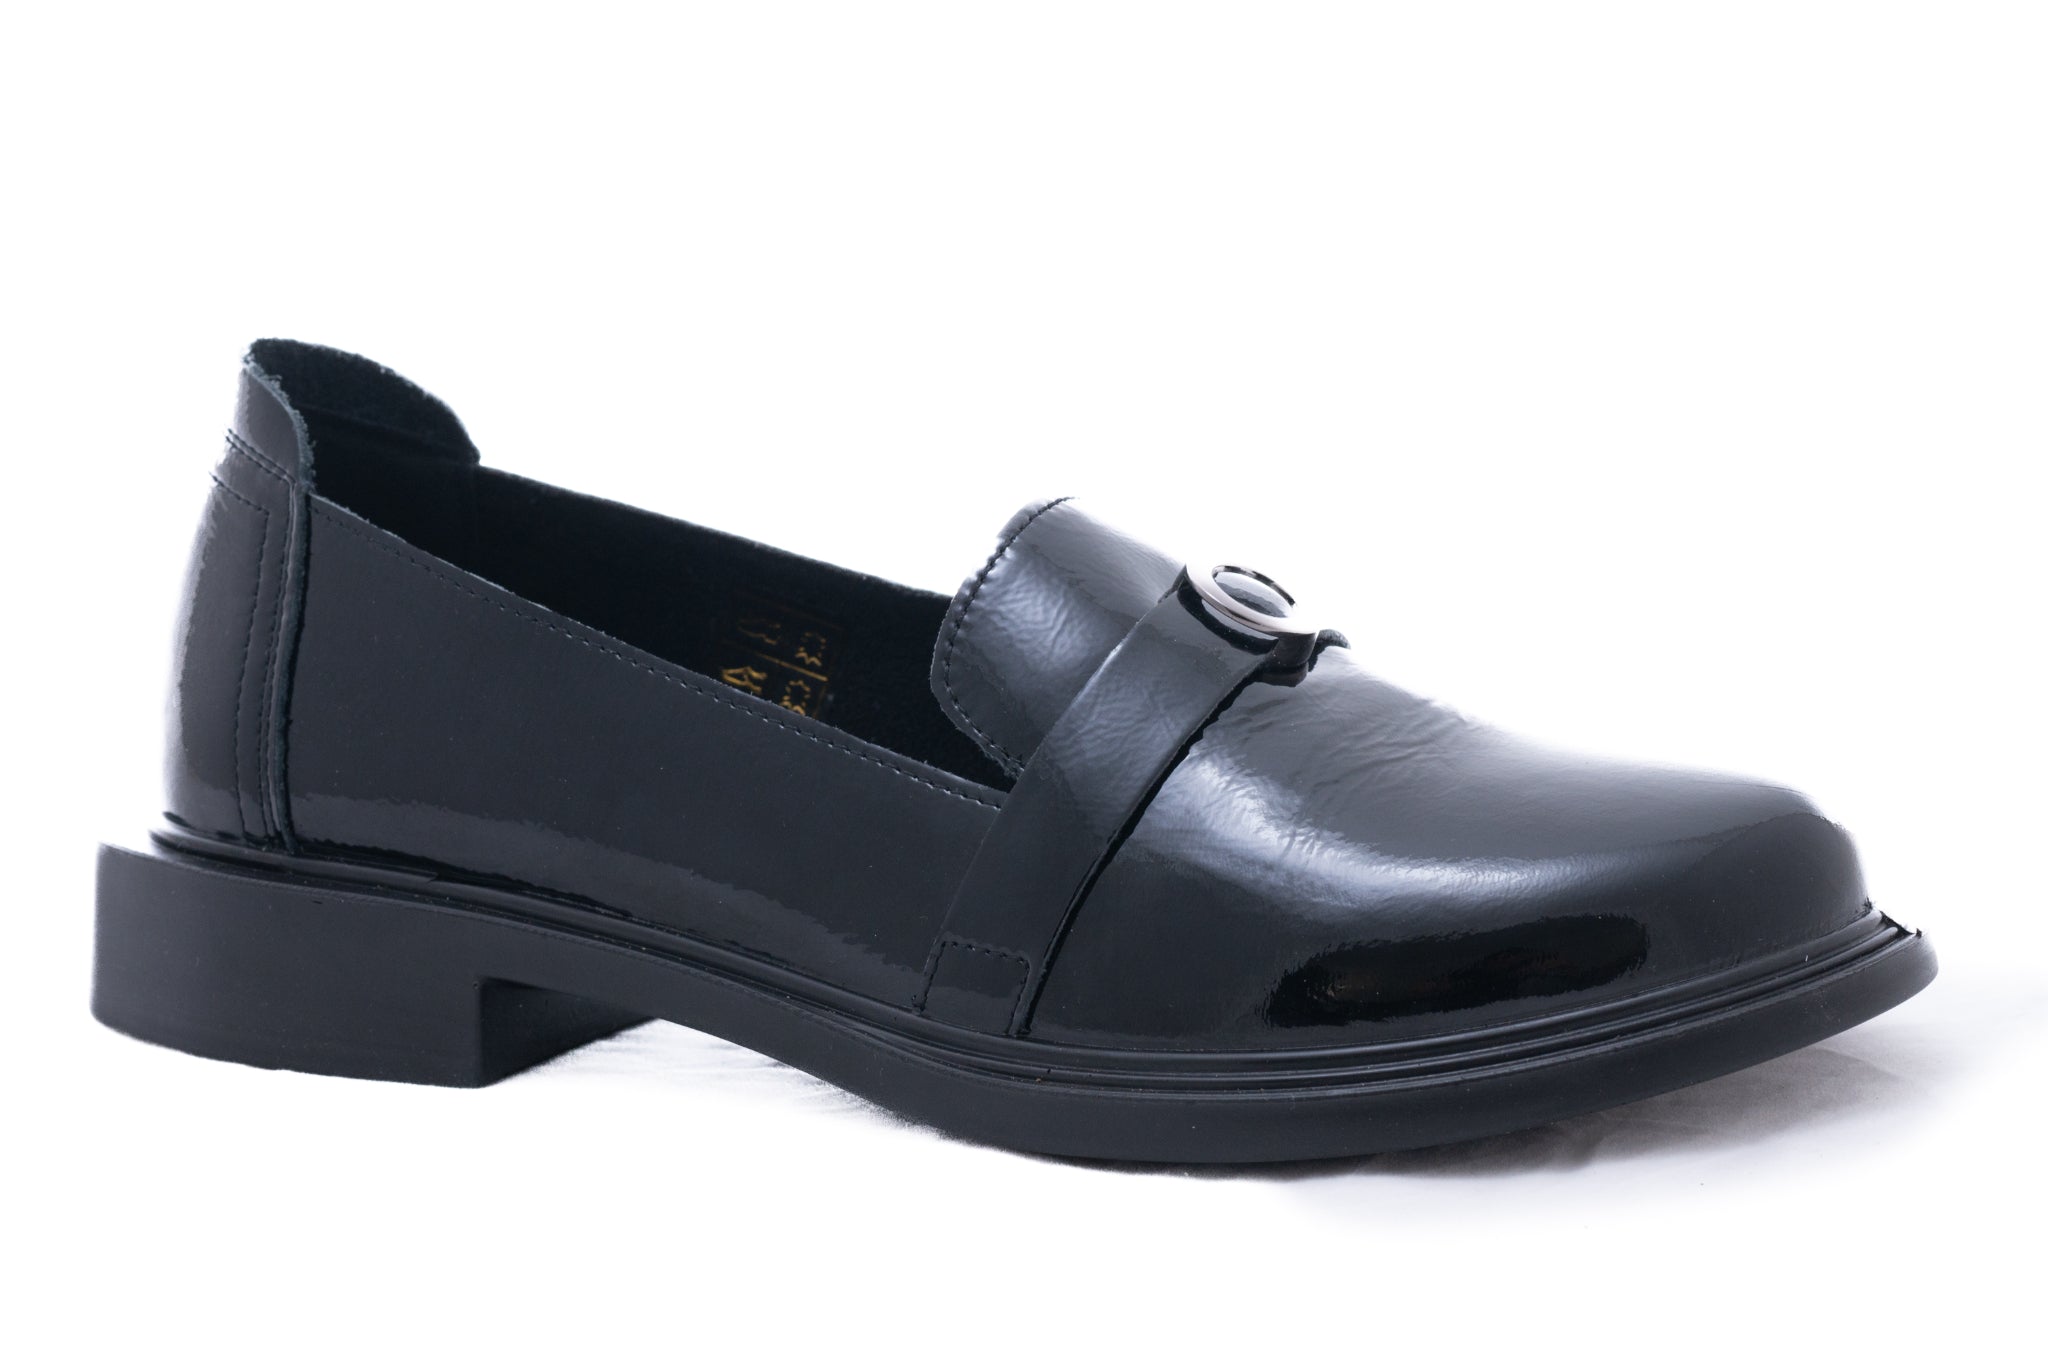 Pantofi dama casual piele naturala Q 115 negru lac